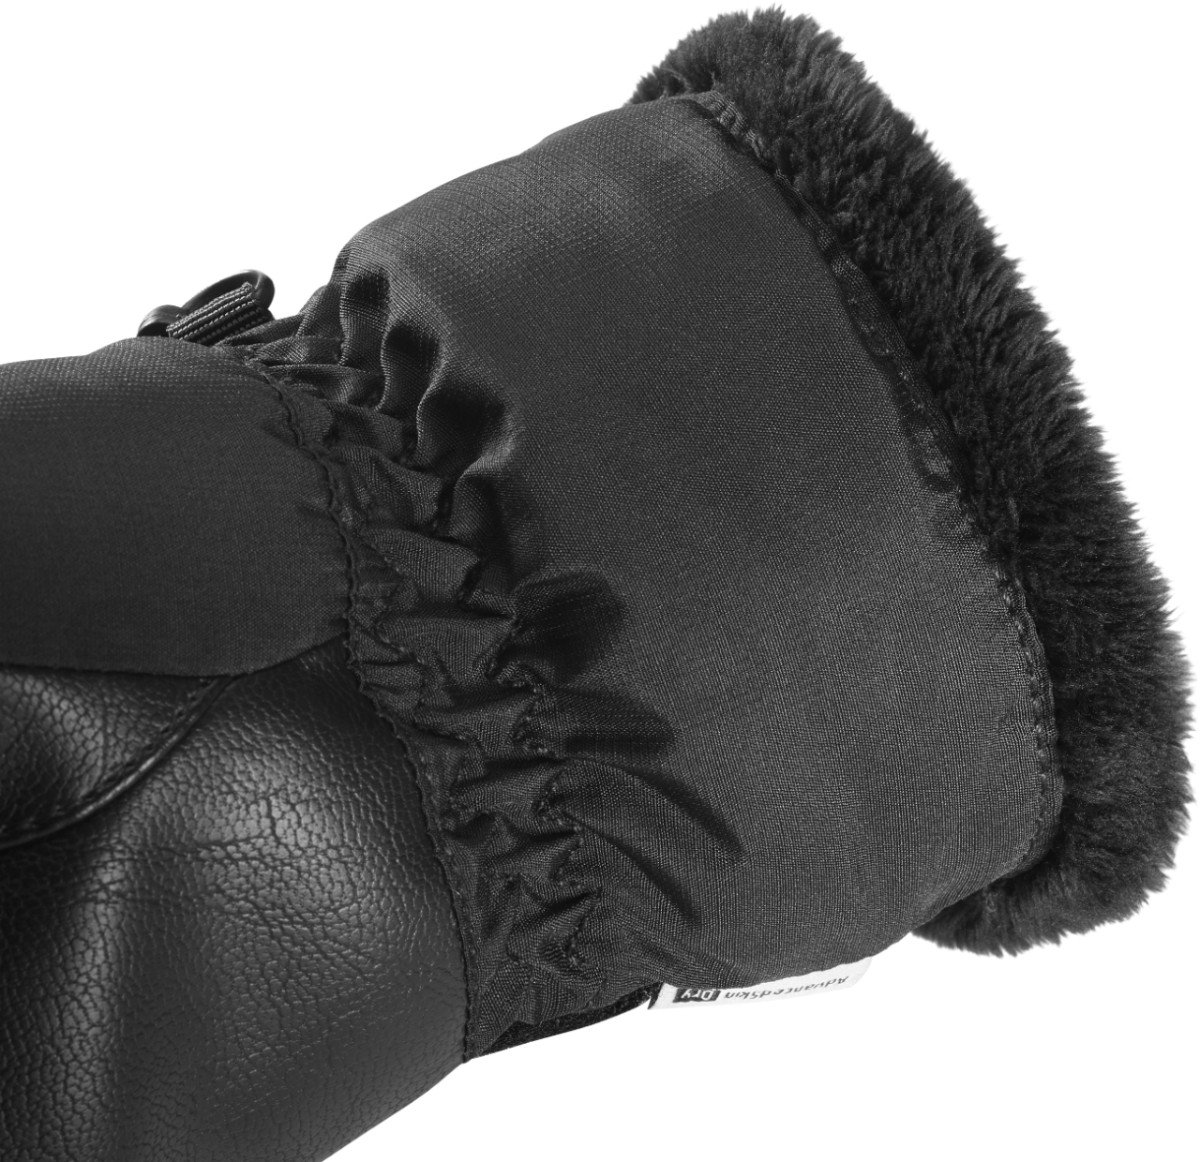 Rukavice Salomon Gloves Force Dry W - černá